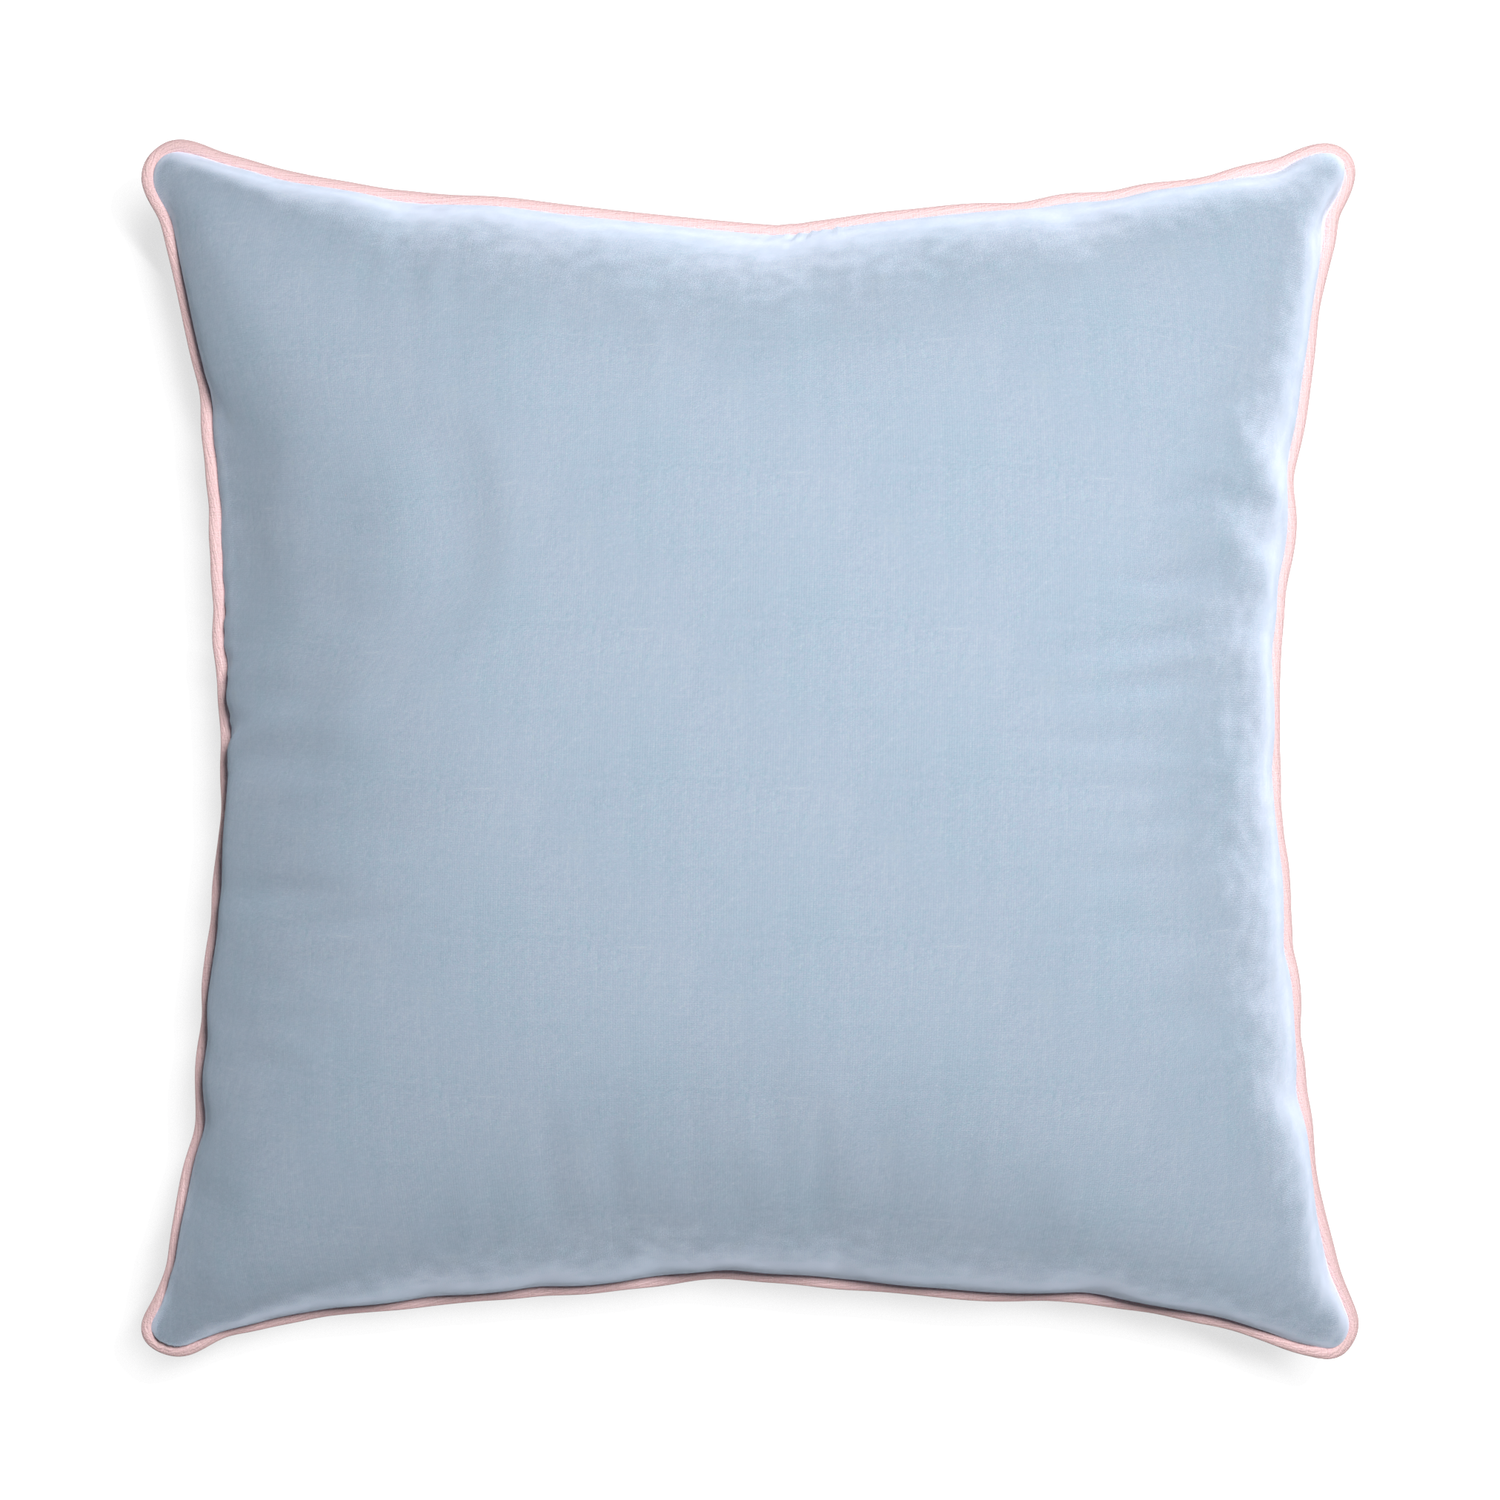 Euro-sham sky velvet custom pillow with petal piping on white background